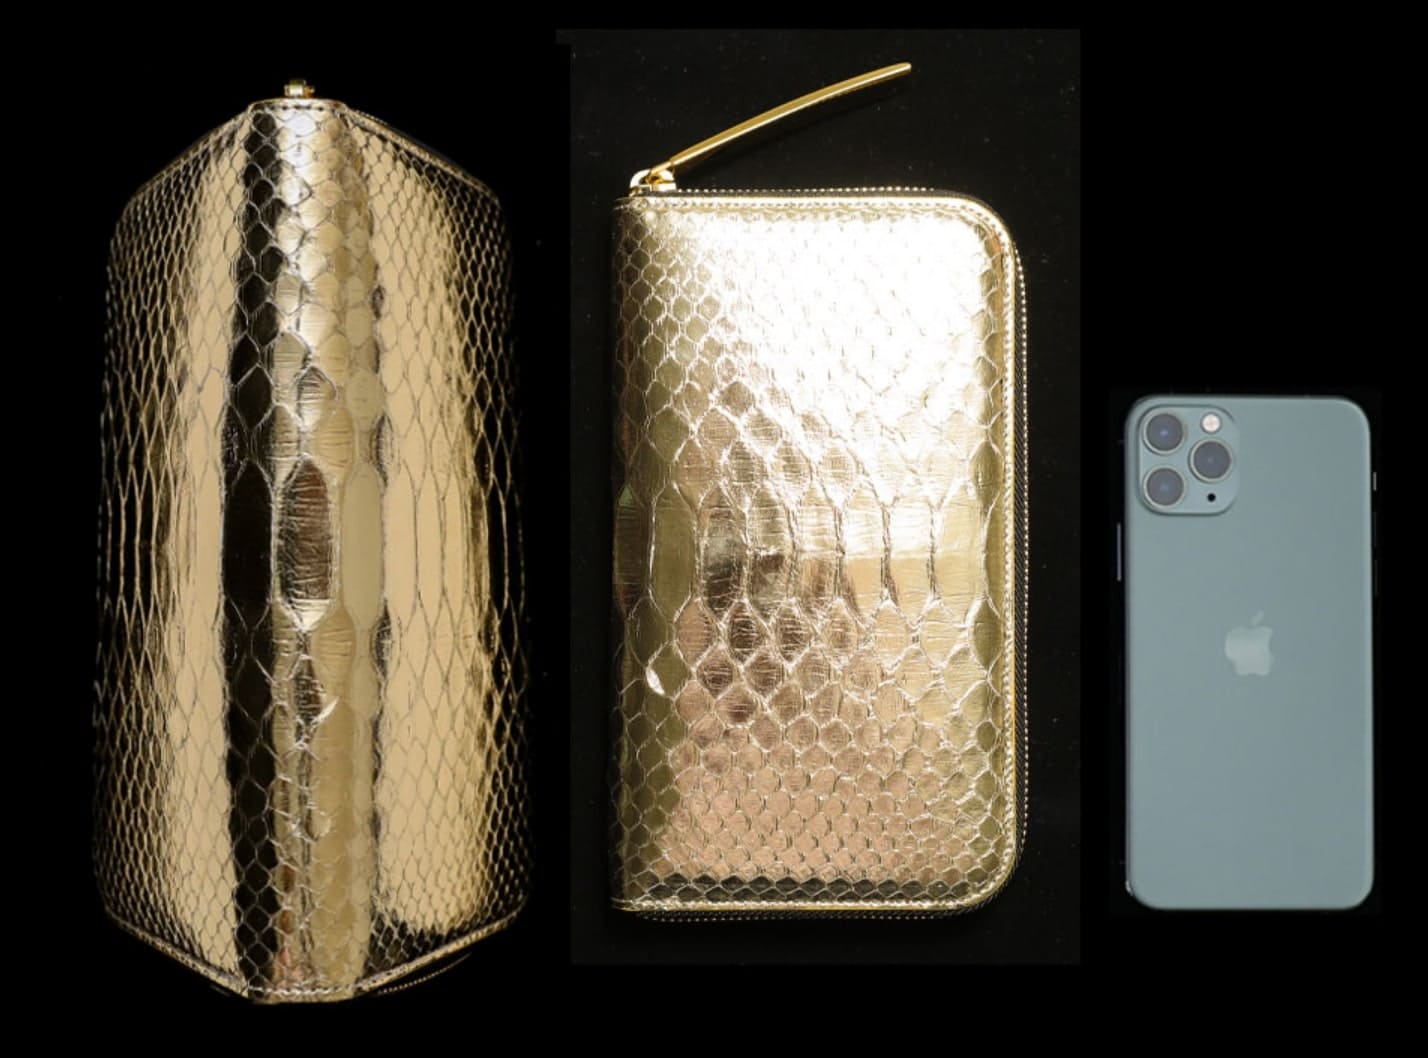 iPhoneと並んだ池田工芸のゴールドパイソン財布